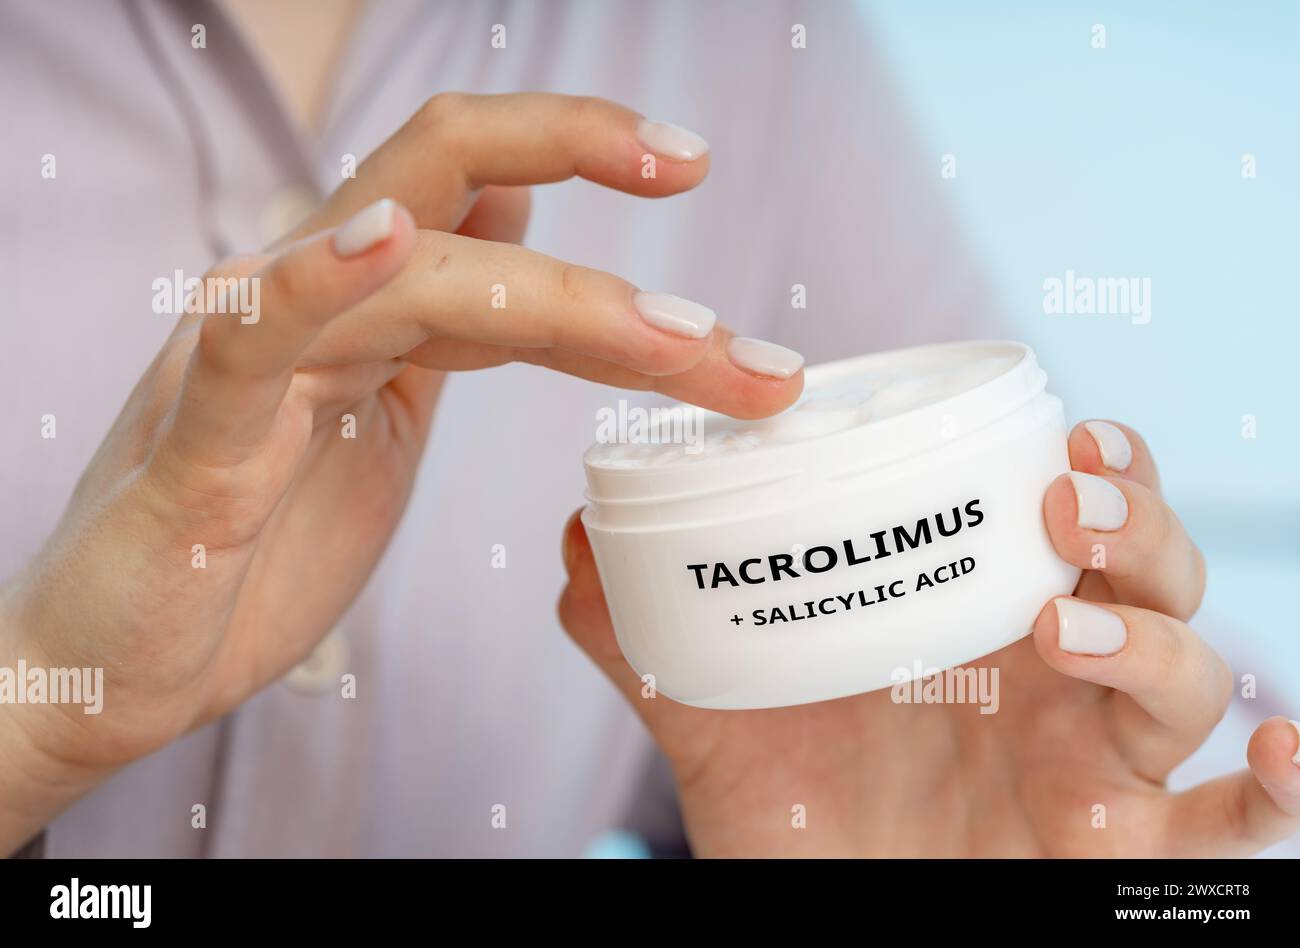 Tacrolimus e acido salicilico crema medica, immagine concettuale Foto Stock